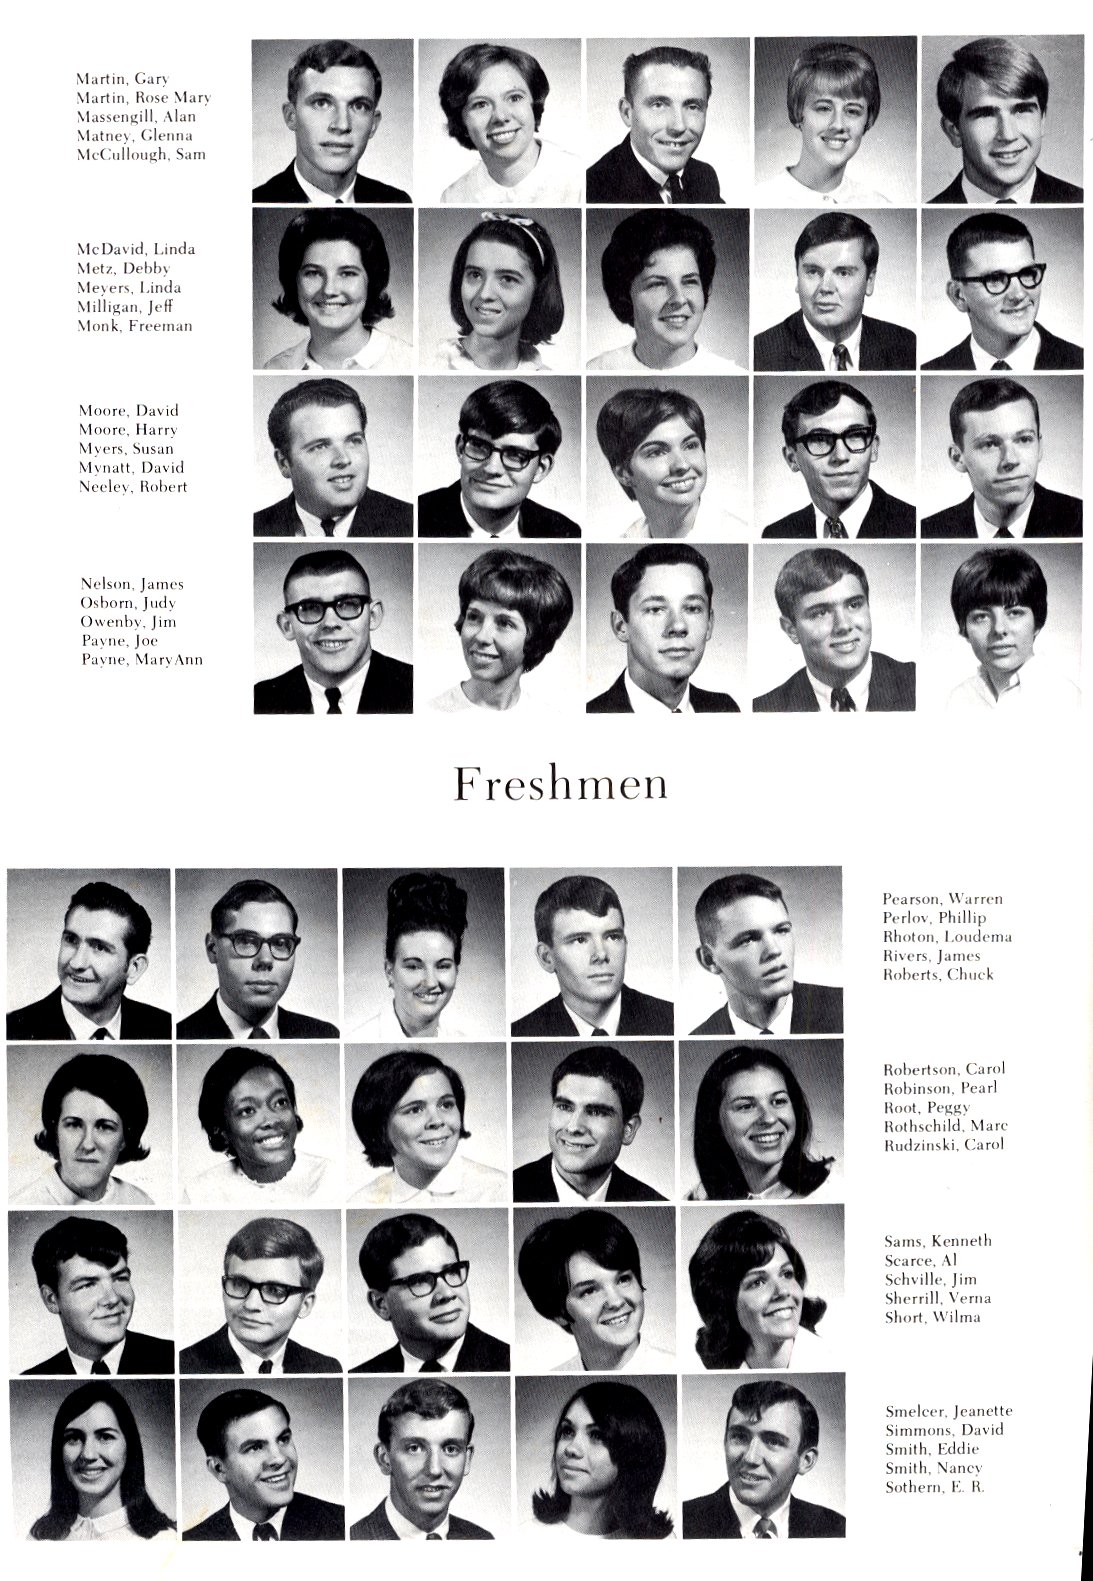 The Freshman class of 1968